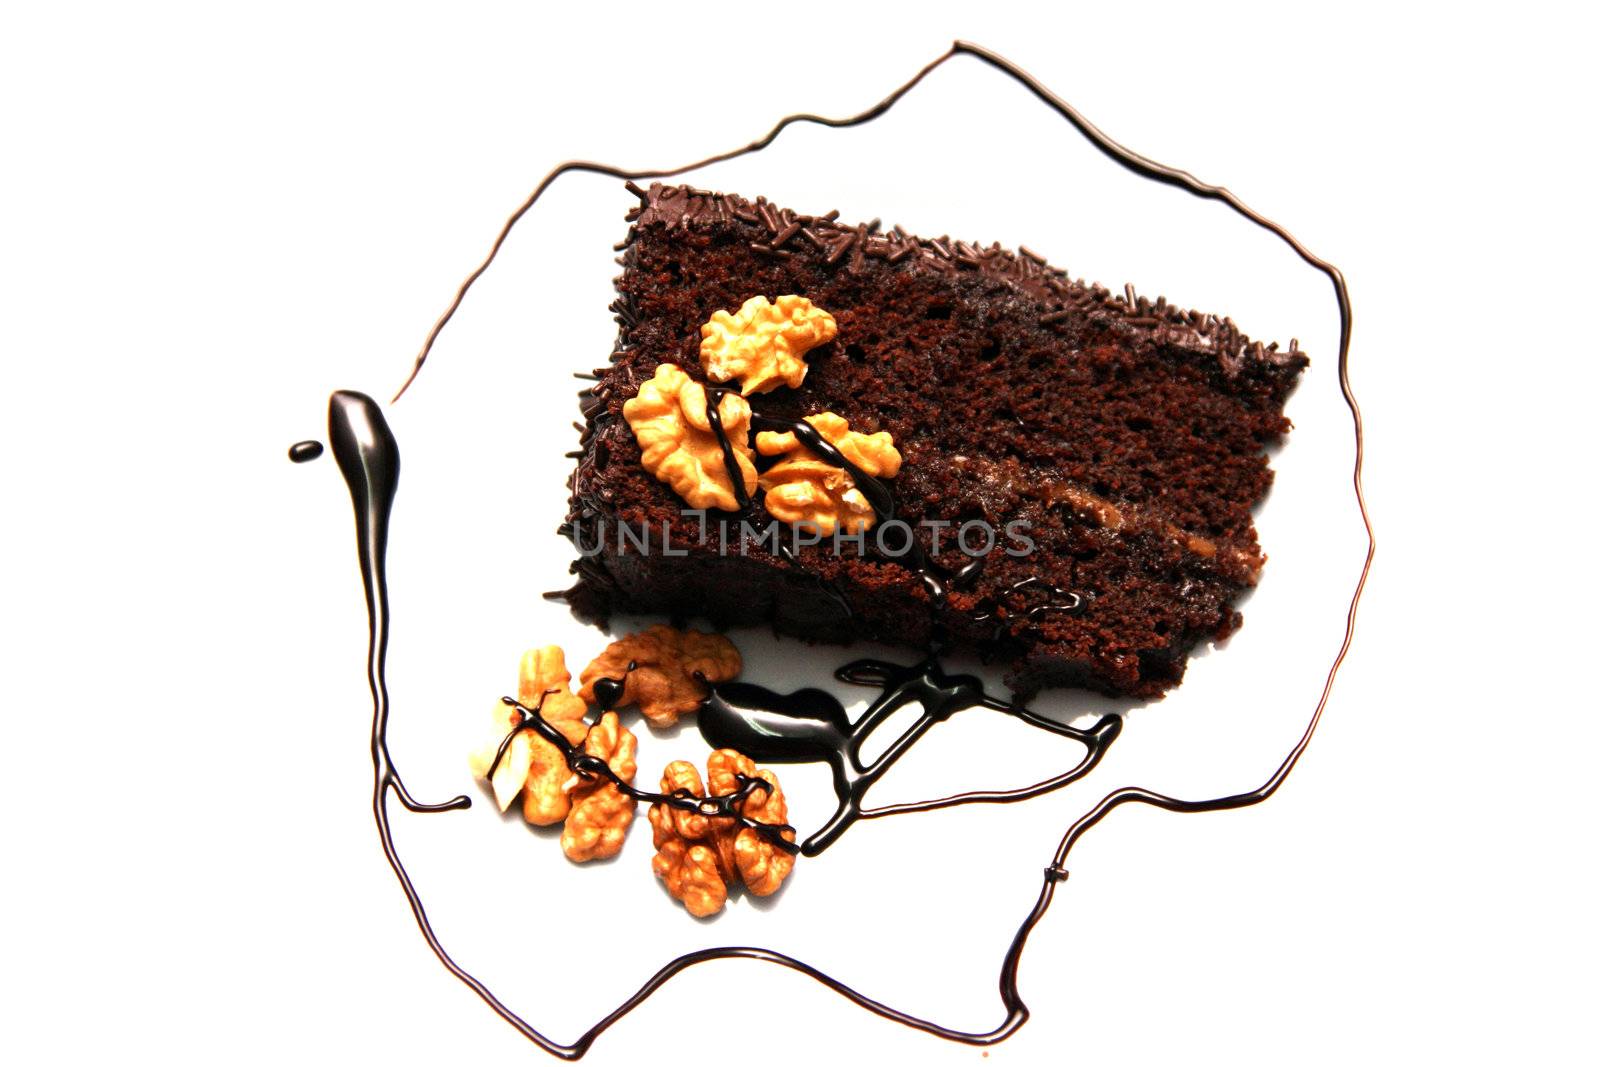 tasty chocolate cake by jpcasais